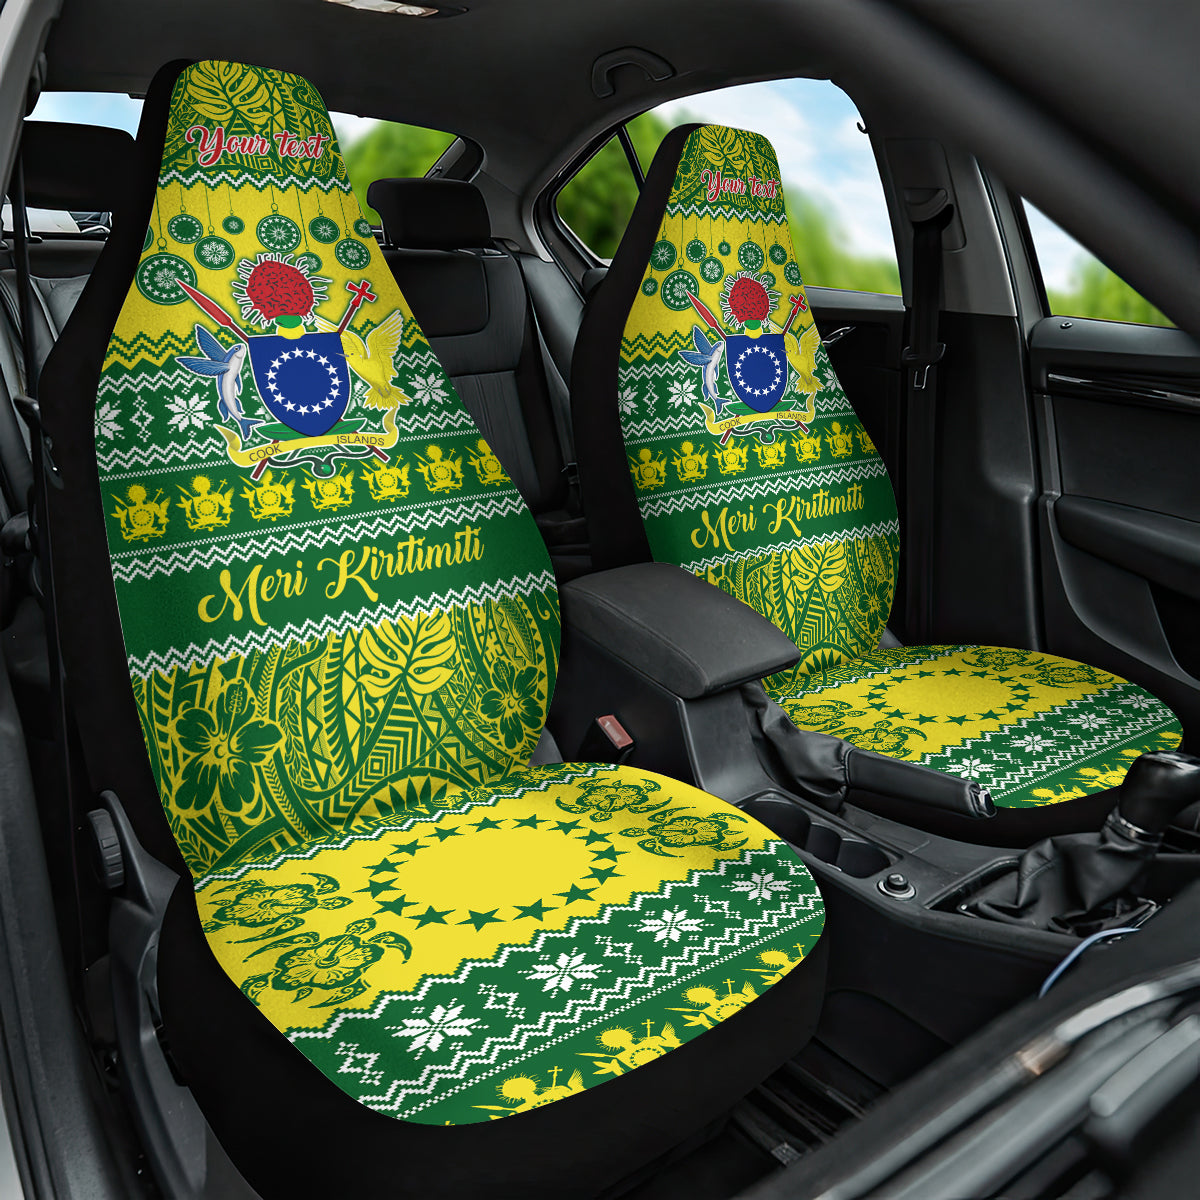 Personalised Cook Islands Christmas Car Seat Cover Santa Beach Meri Kiritimiti LT9 One Size Green - Polynesian Pride